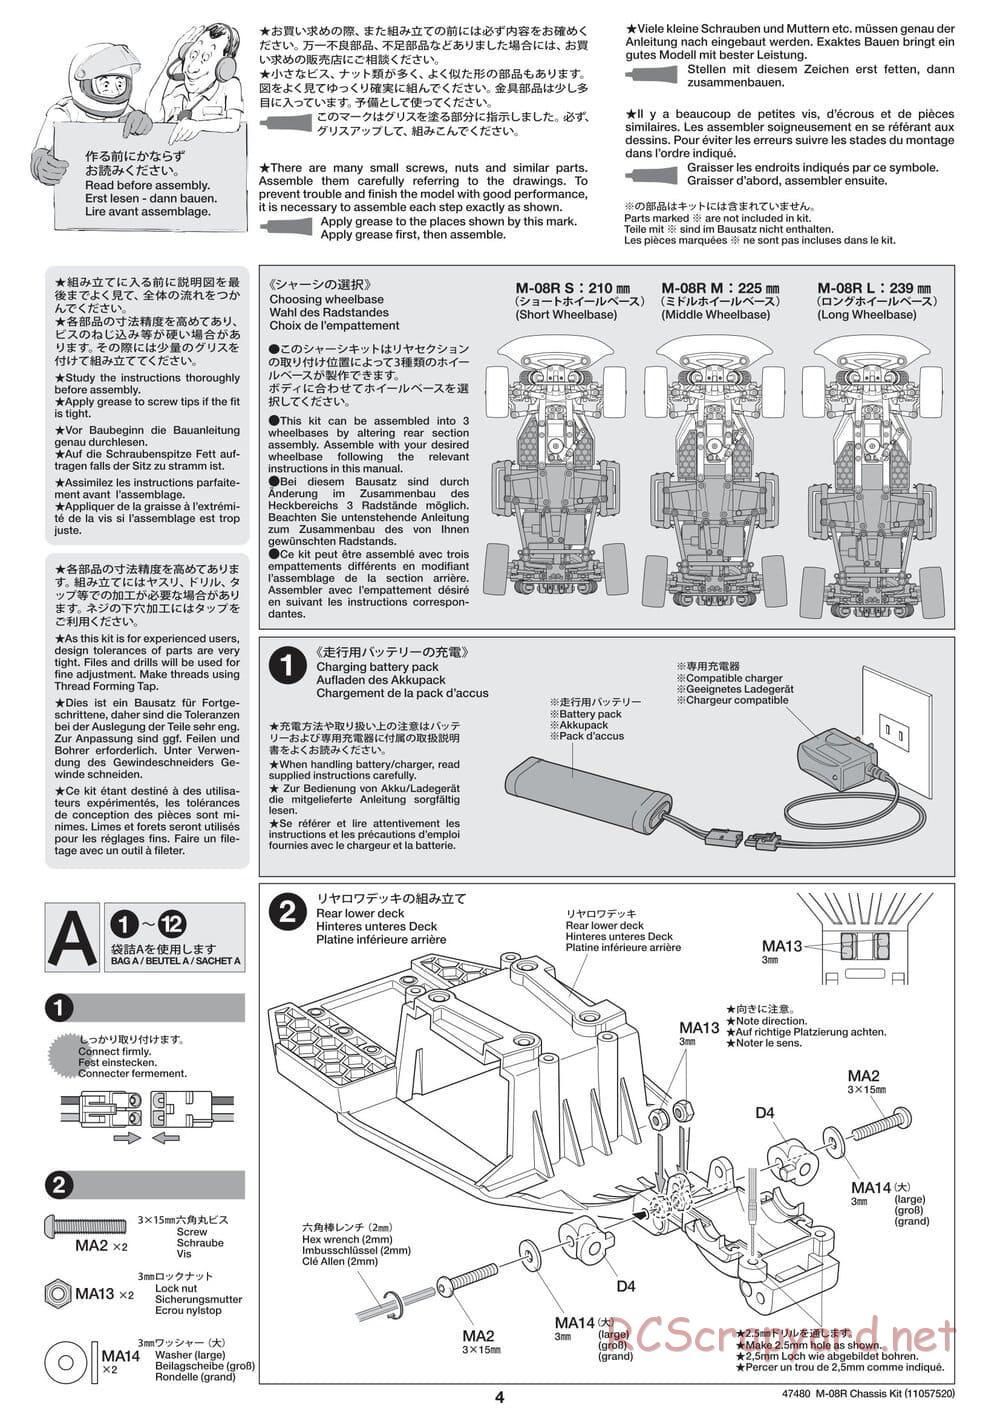 Tamiya - M-08R Chassis - Manual - Page 4